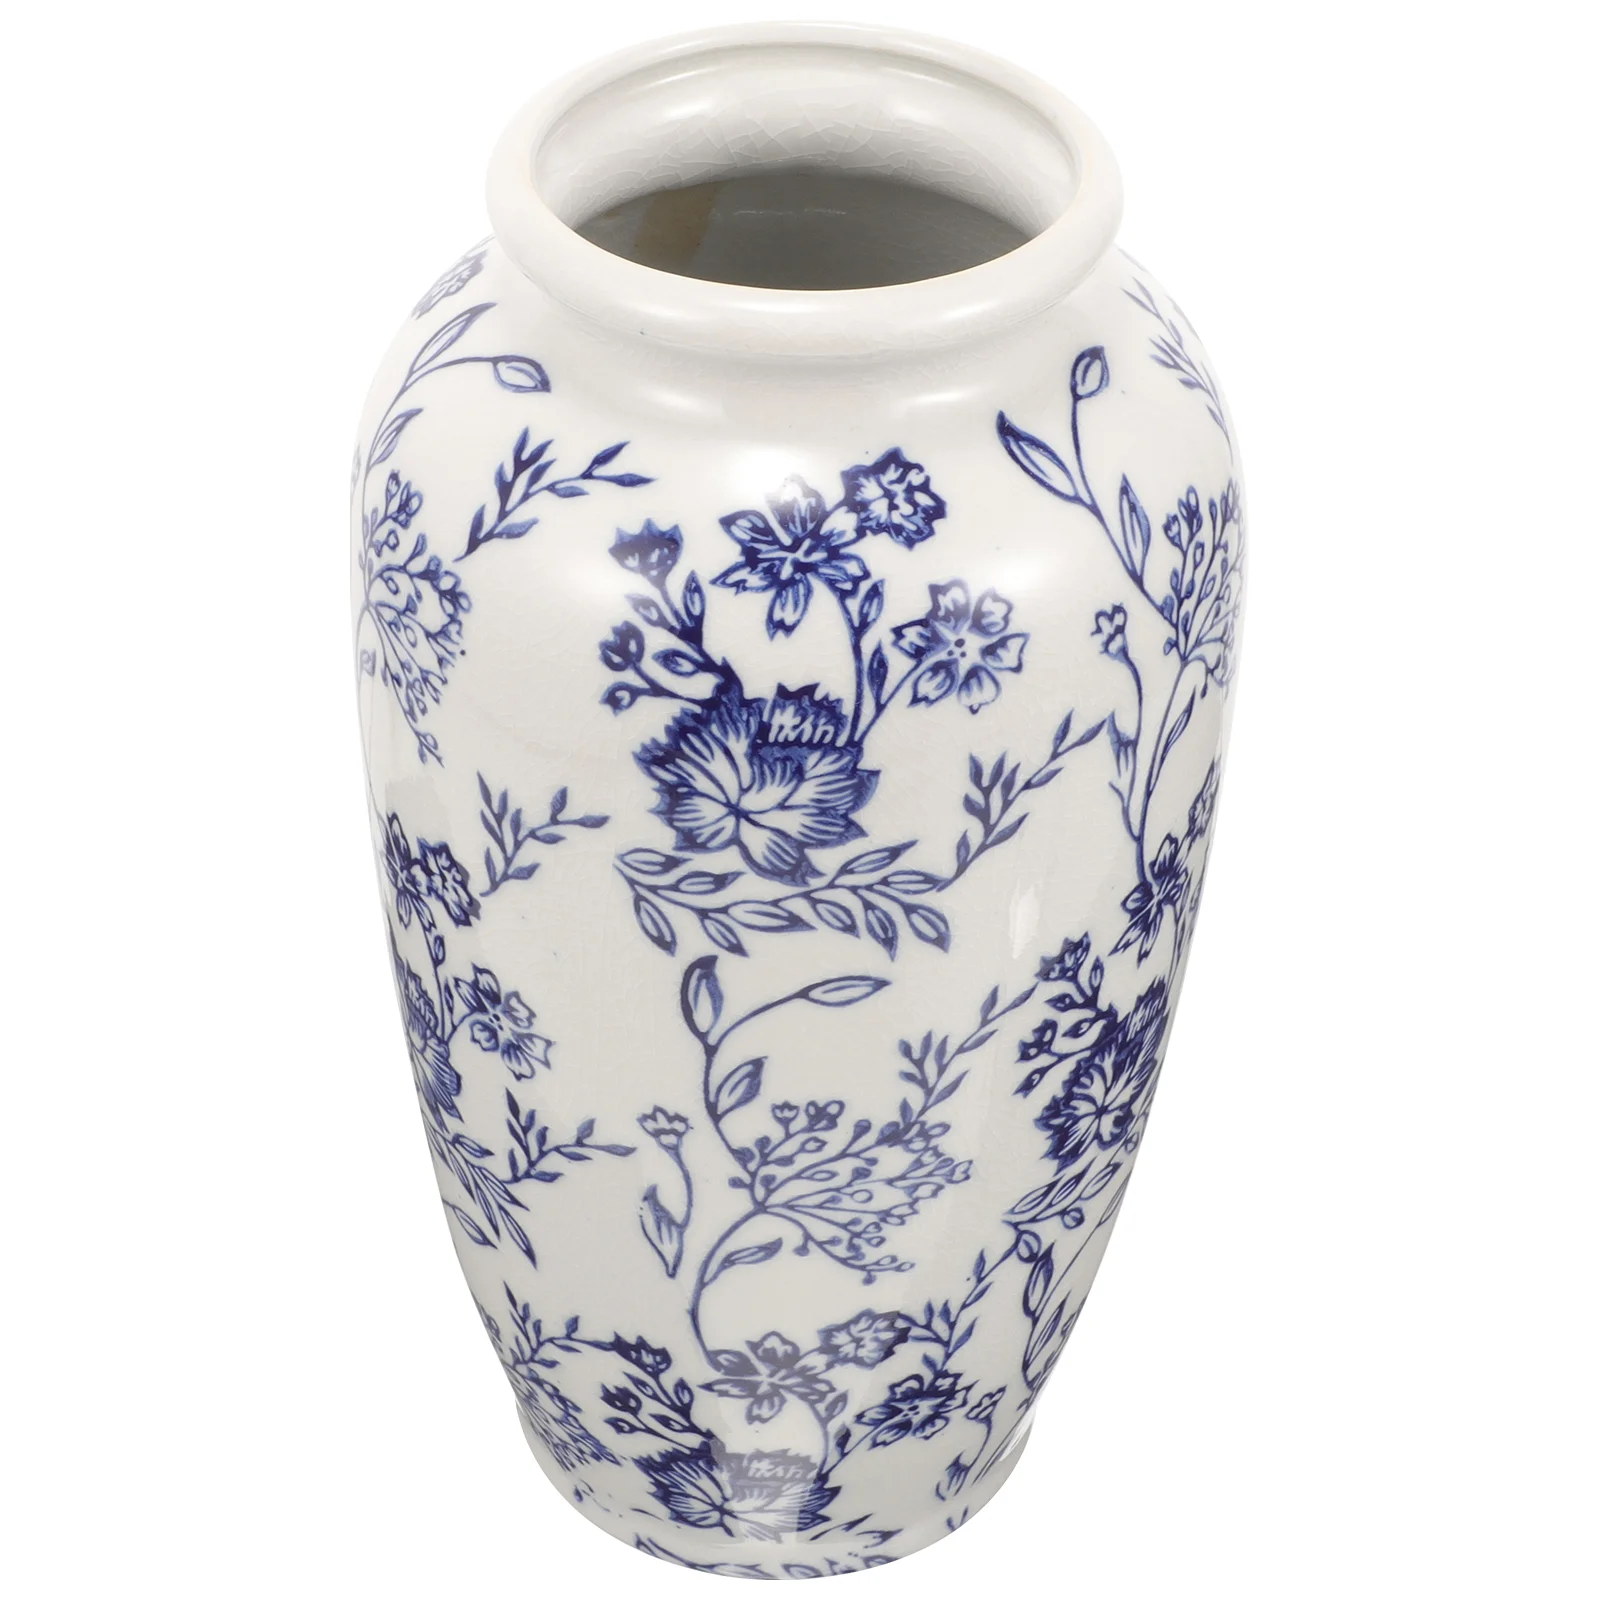 

Blue White Porcelain Vase Ceramic Vases Decorative Pot Table Centerpiece Decoration Small Flower Arrangement